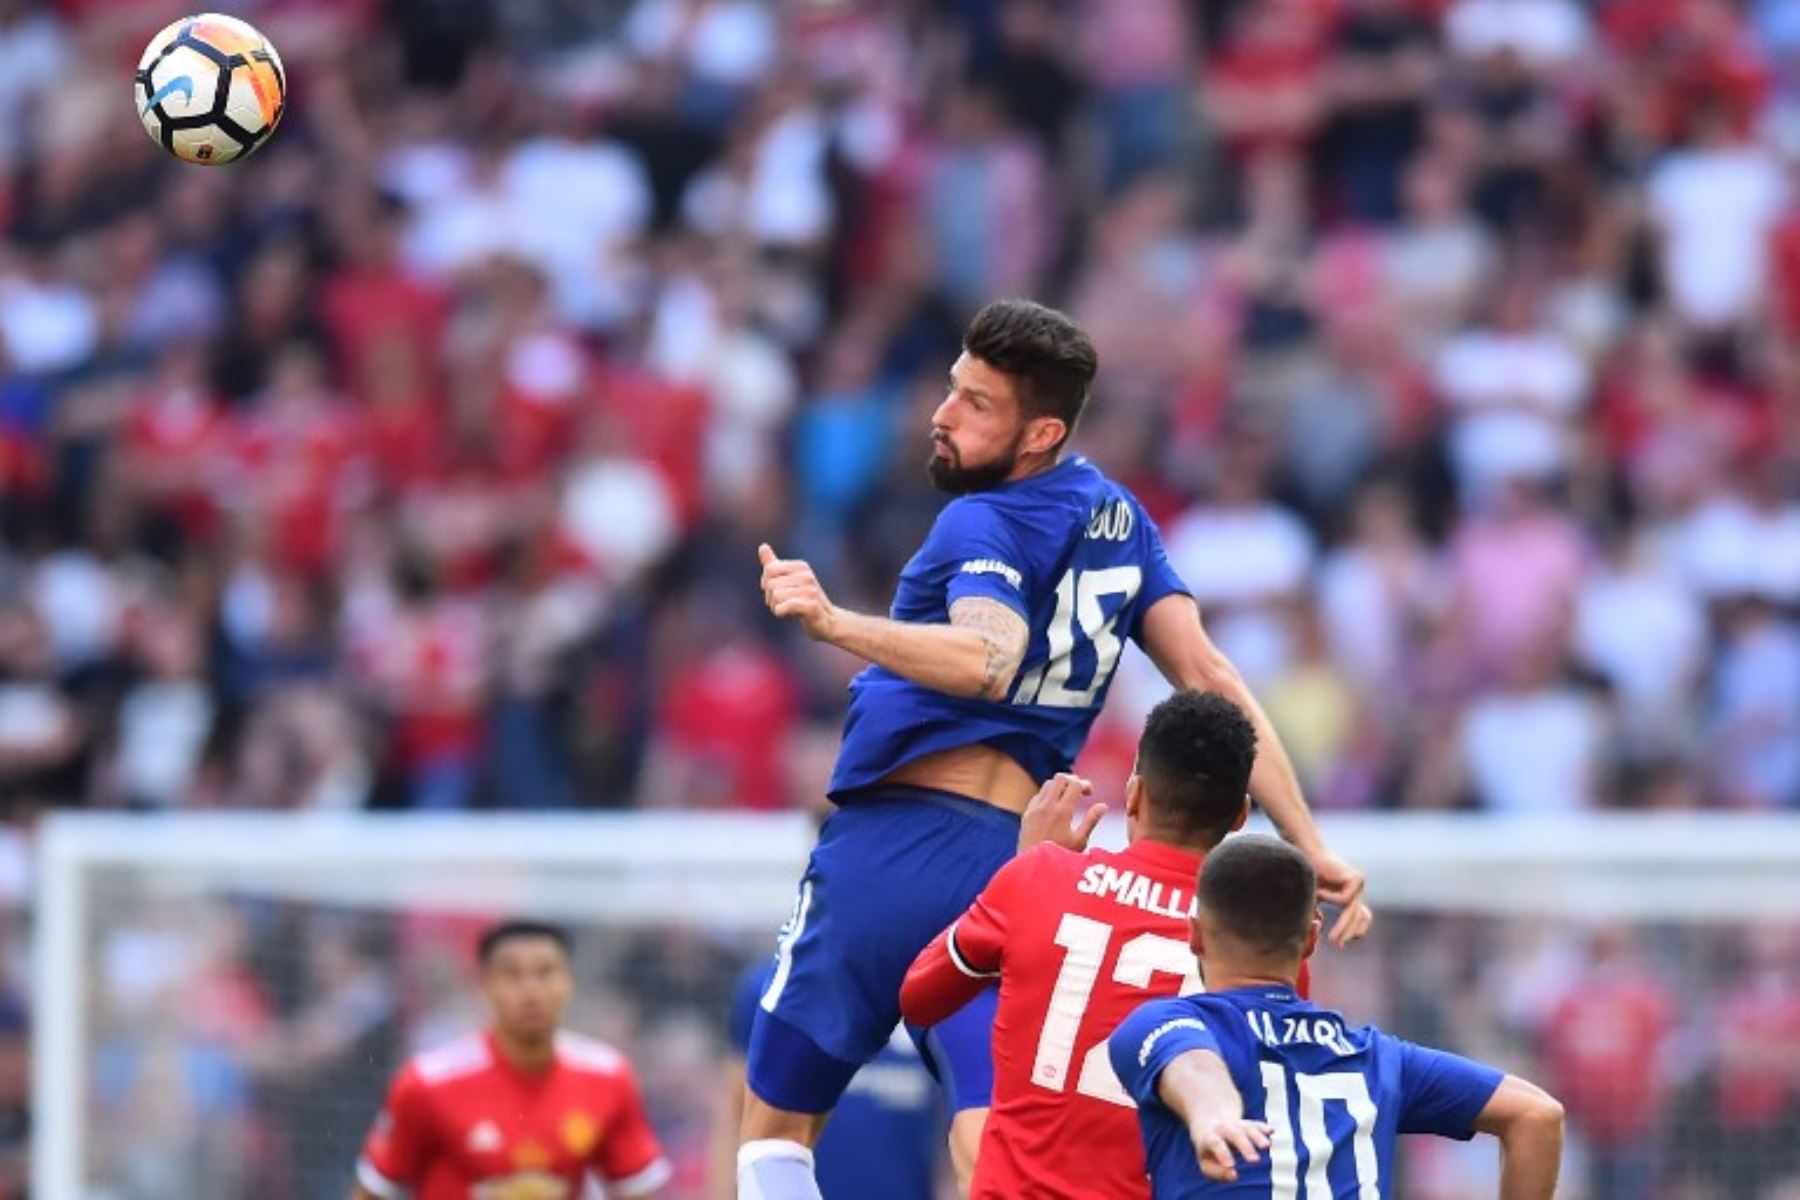 El delantero francés del Chelsea, Olivier Giroud, salta para ganar la pelota durante el partido de fútbol final de la FA Cup inglesa entre Chelsea y Manchester United.Foto:AFP